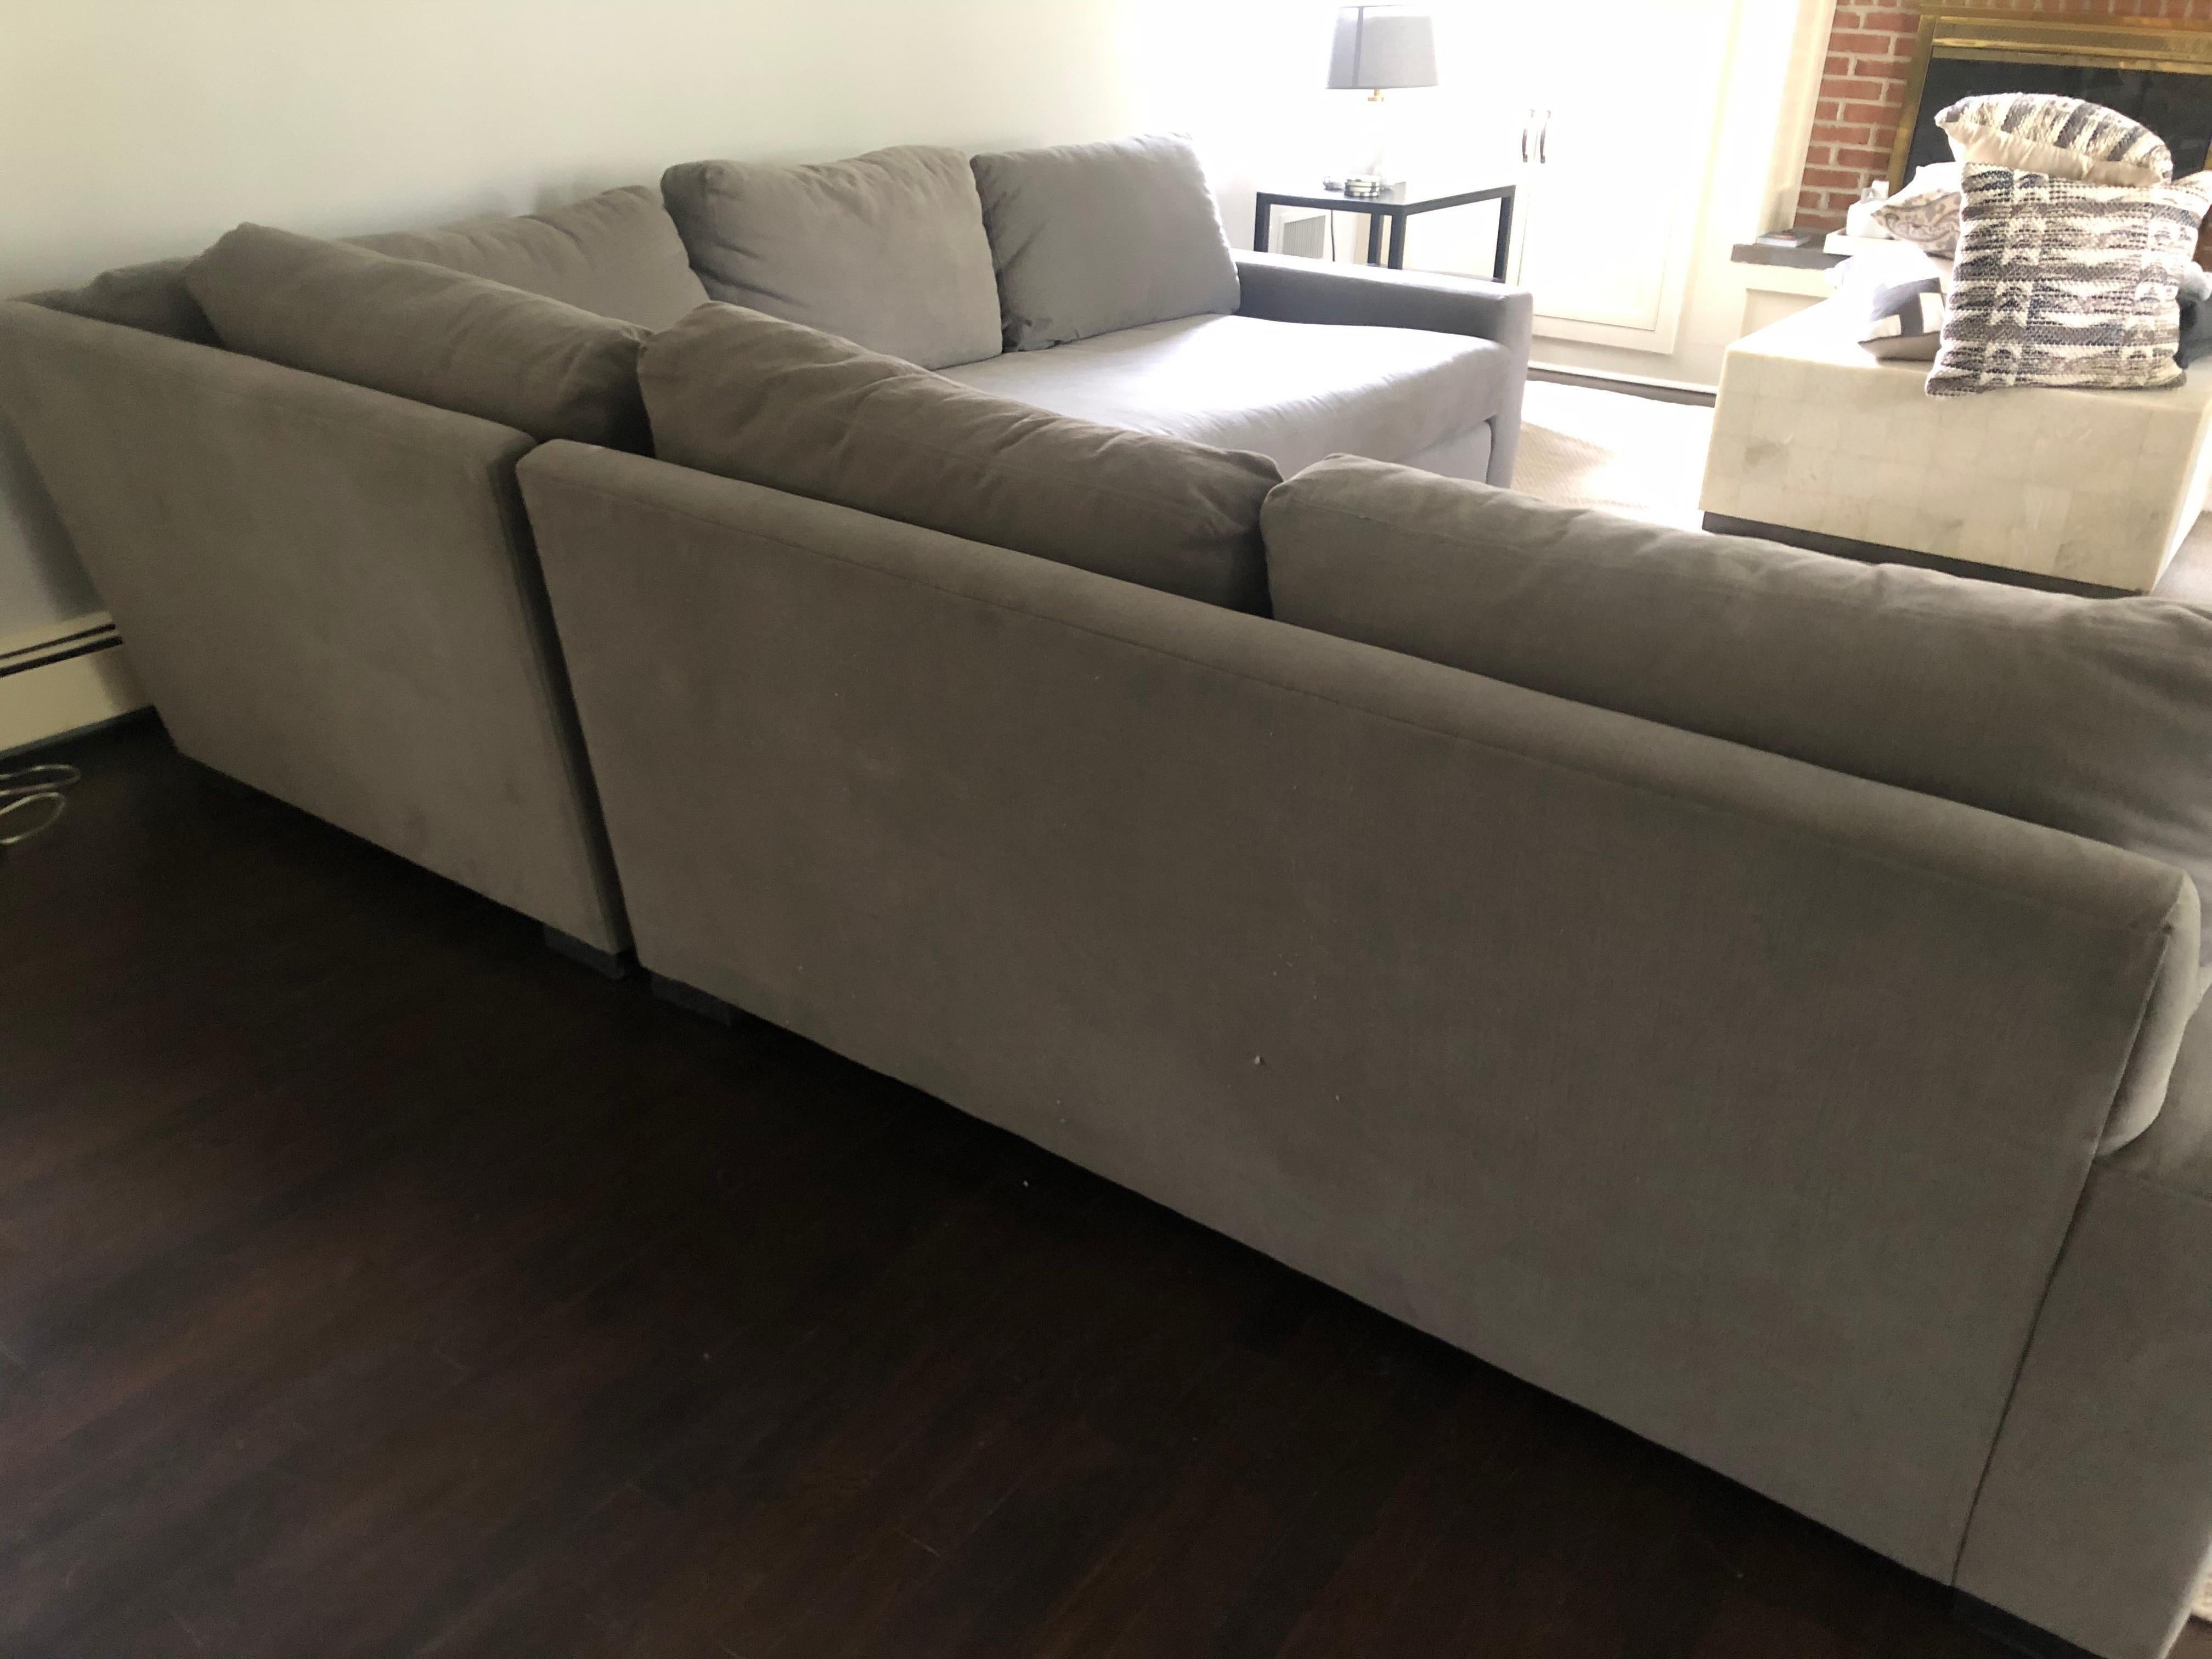 Contemporary Super Comfy Family Room Sectional Sofa